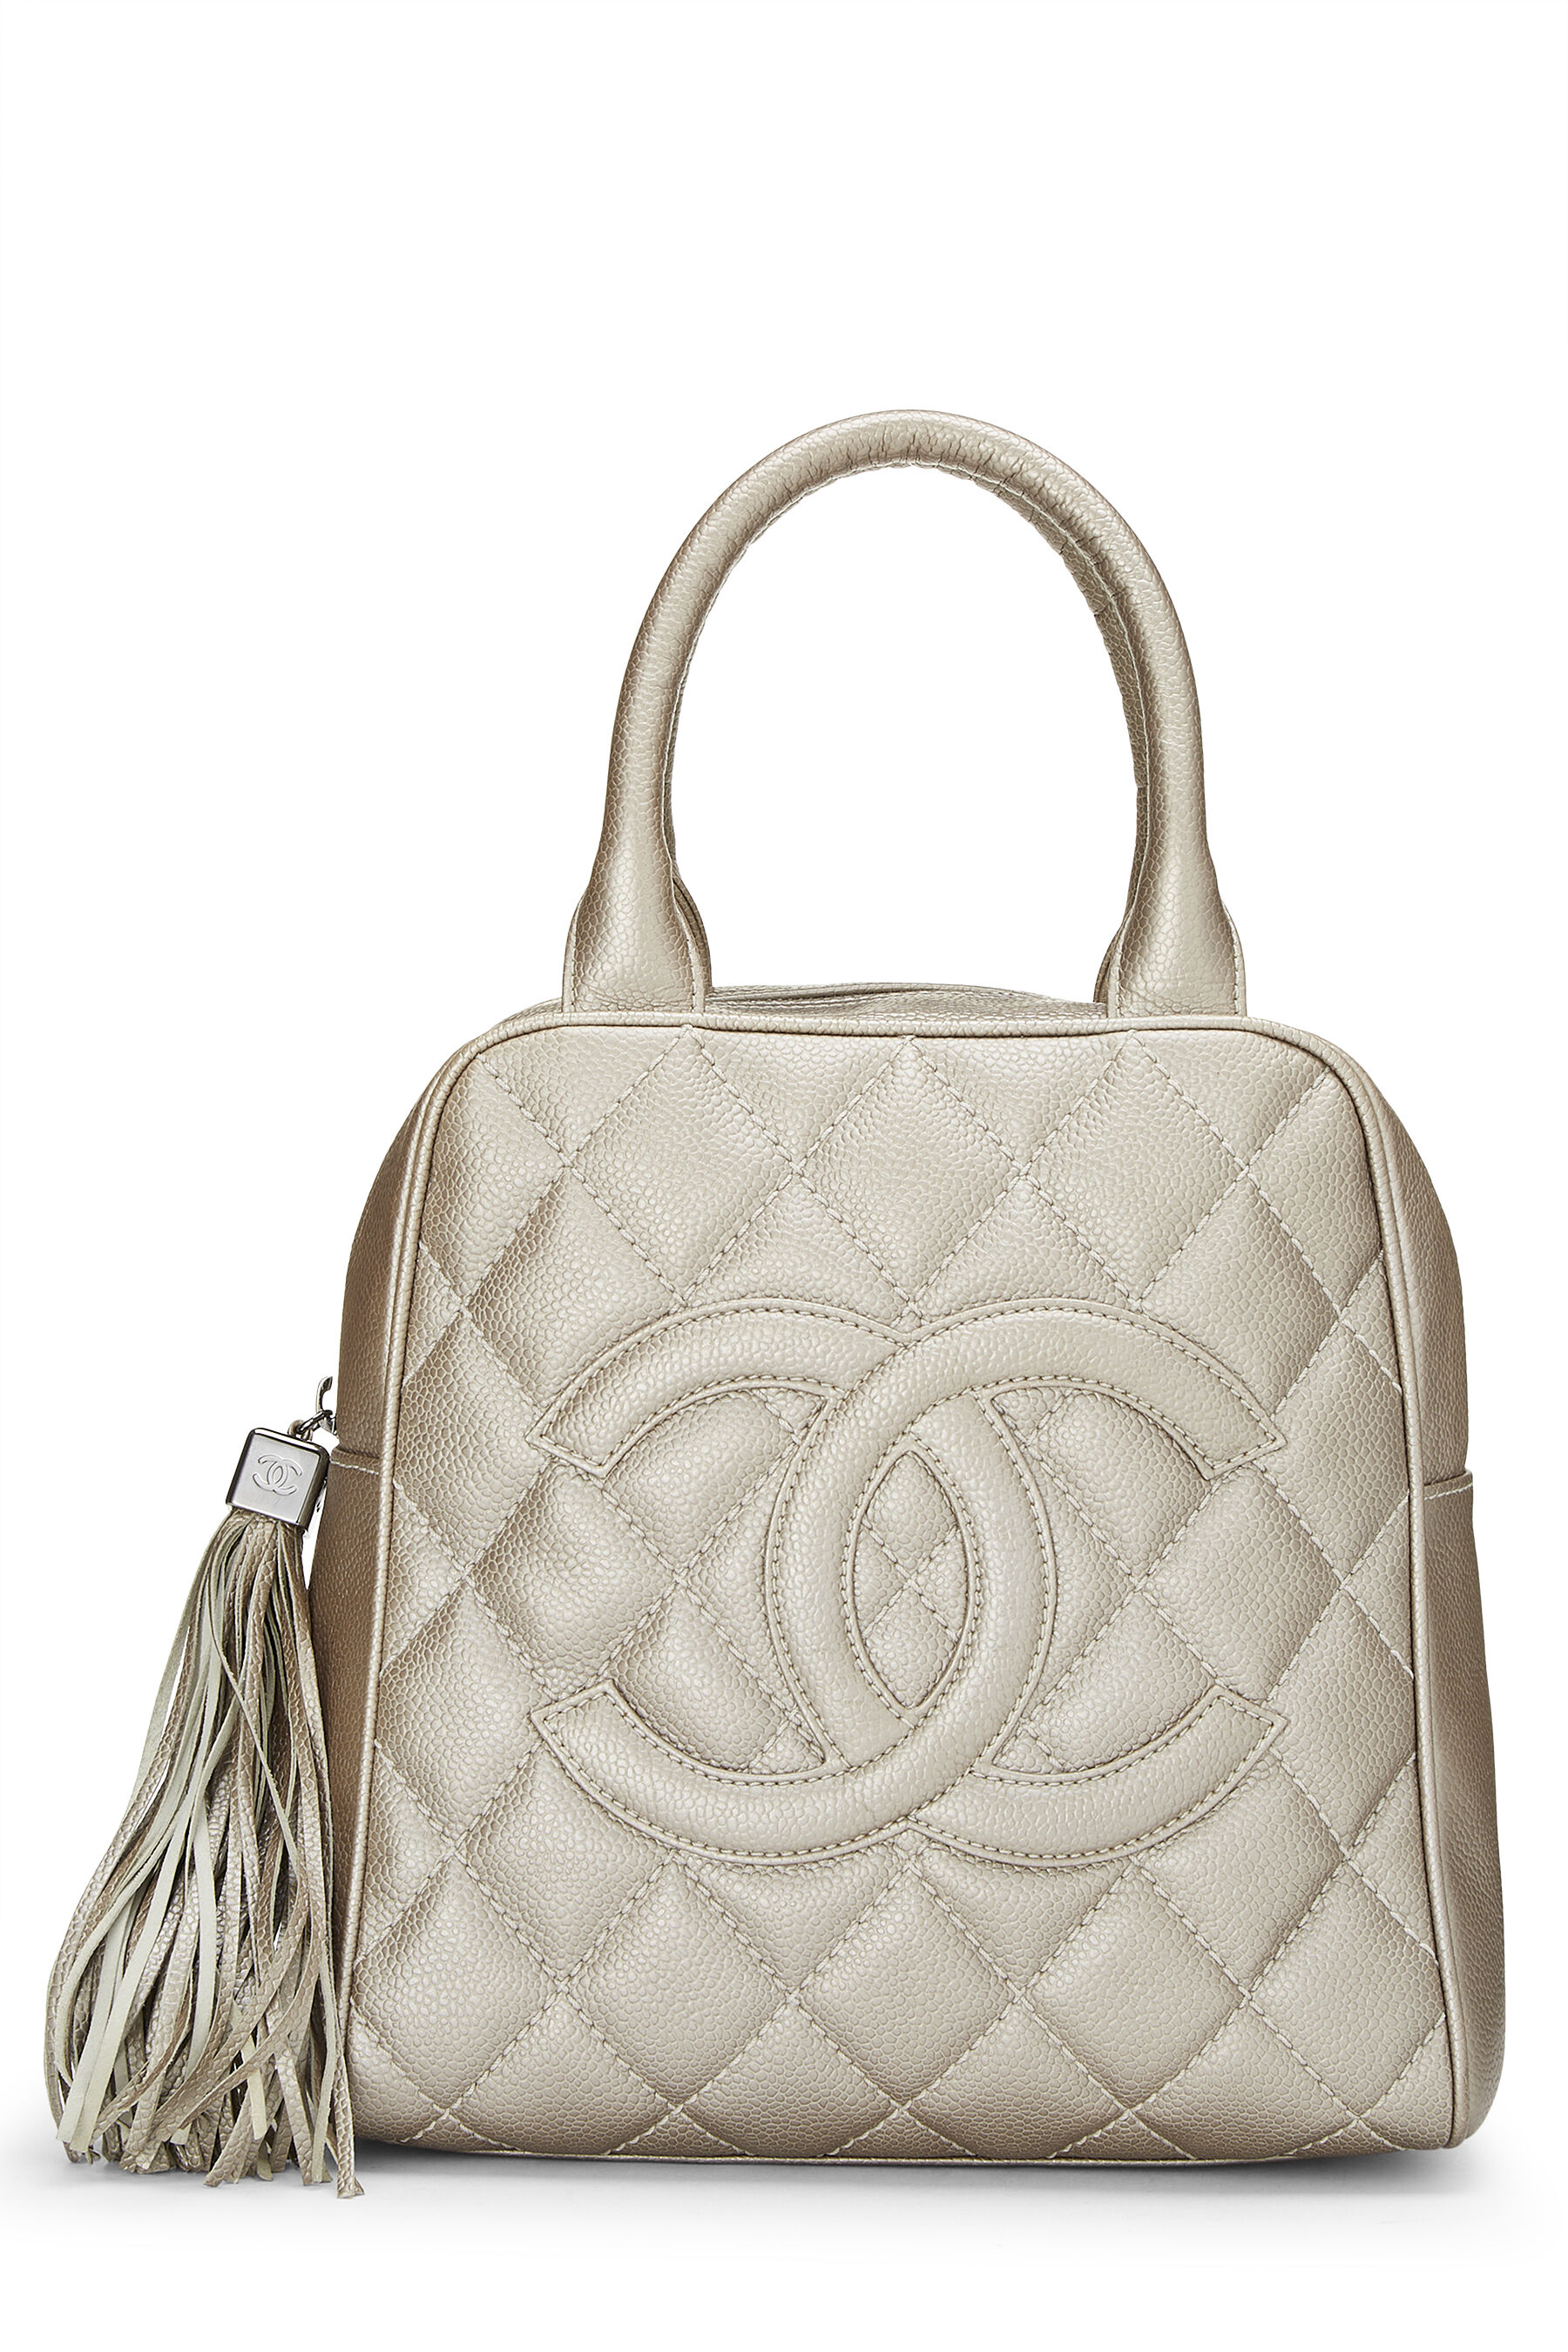 Mariner Ren og skær apparat Chanel Metallic Silver Quilted Caviar Tassel Handbag Q6B4DJ0FVB001 | WGACA